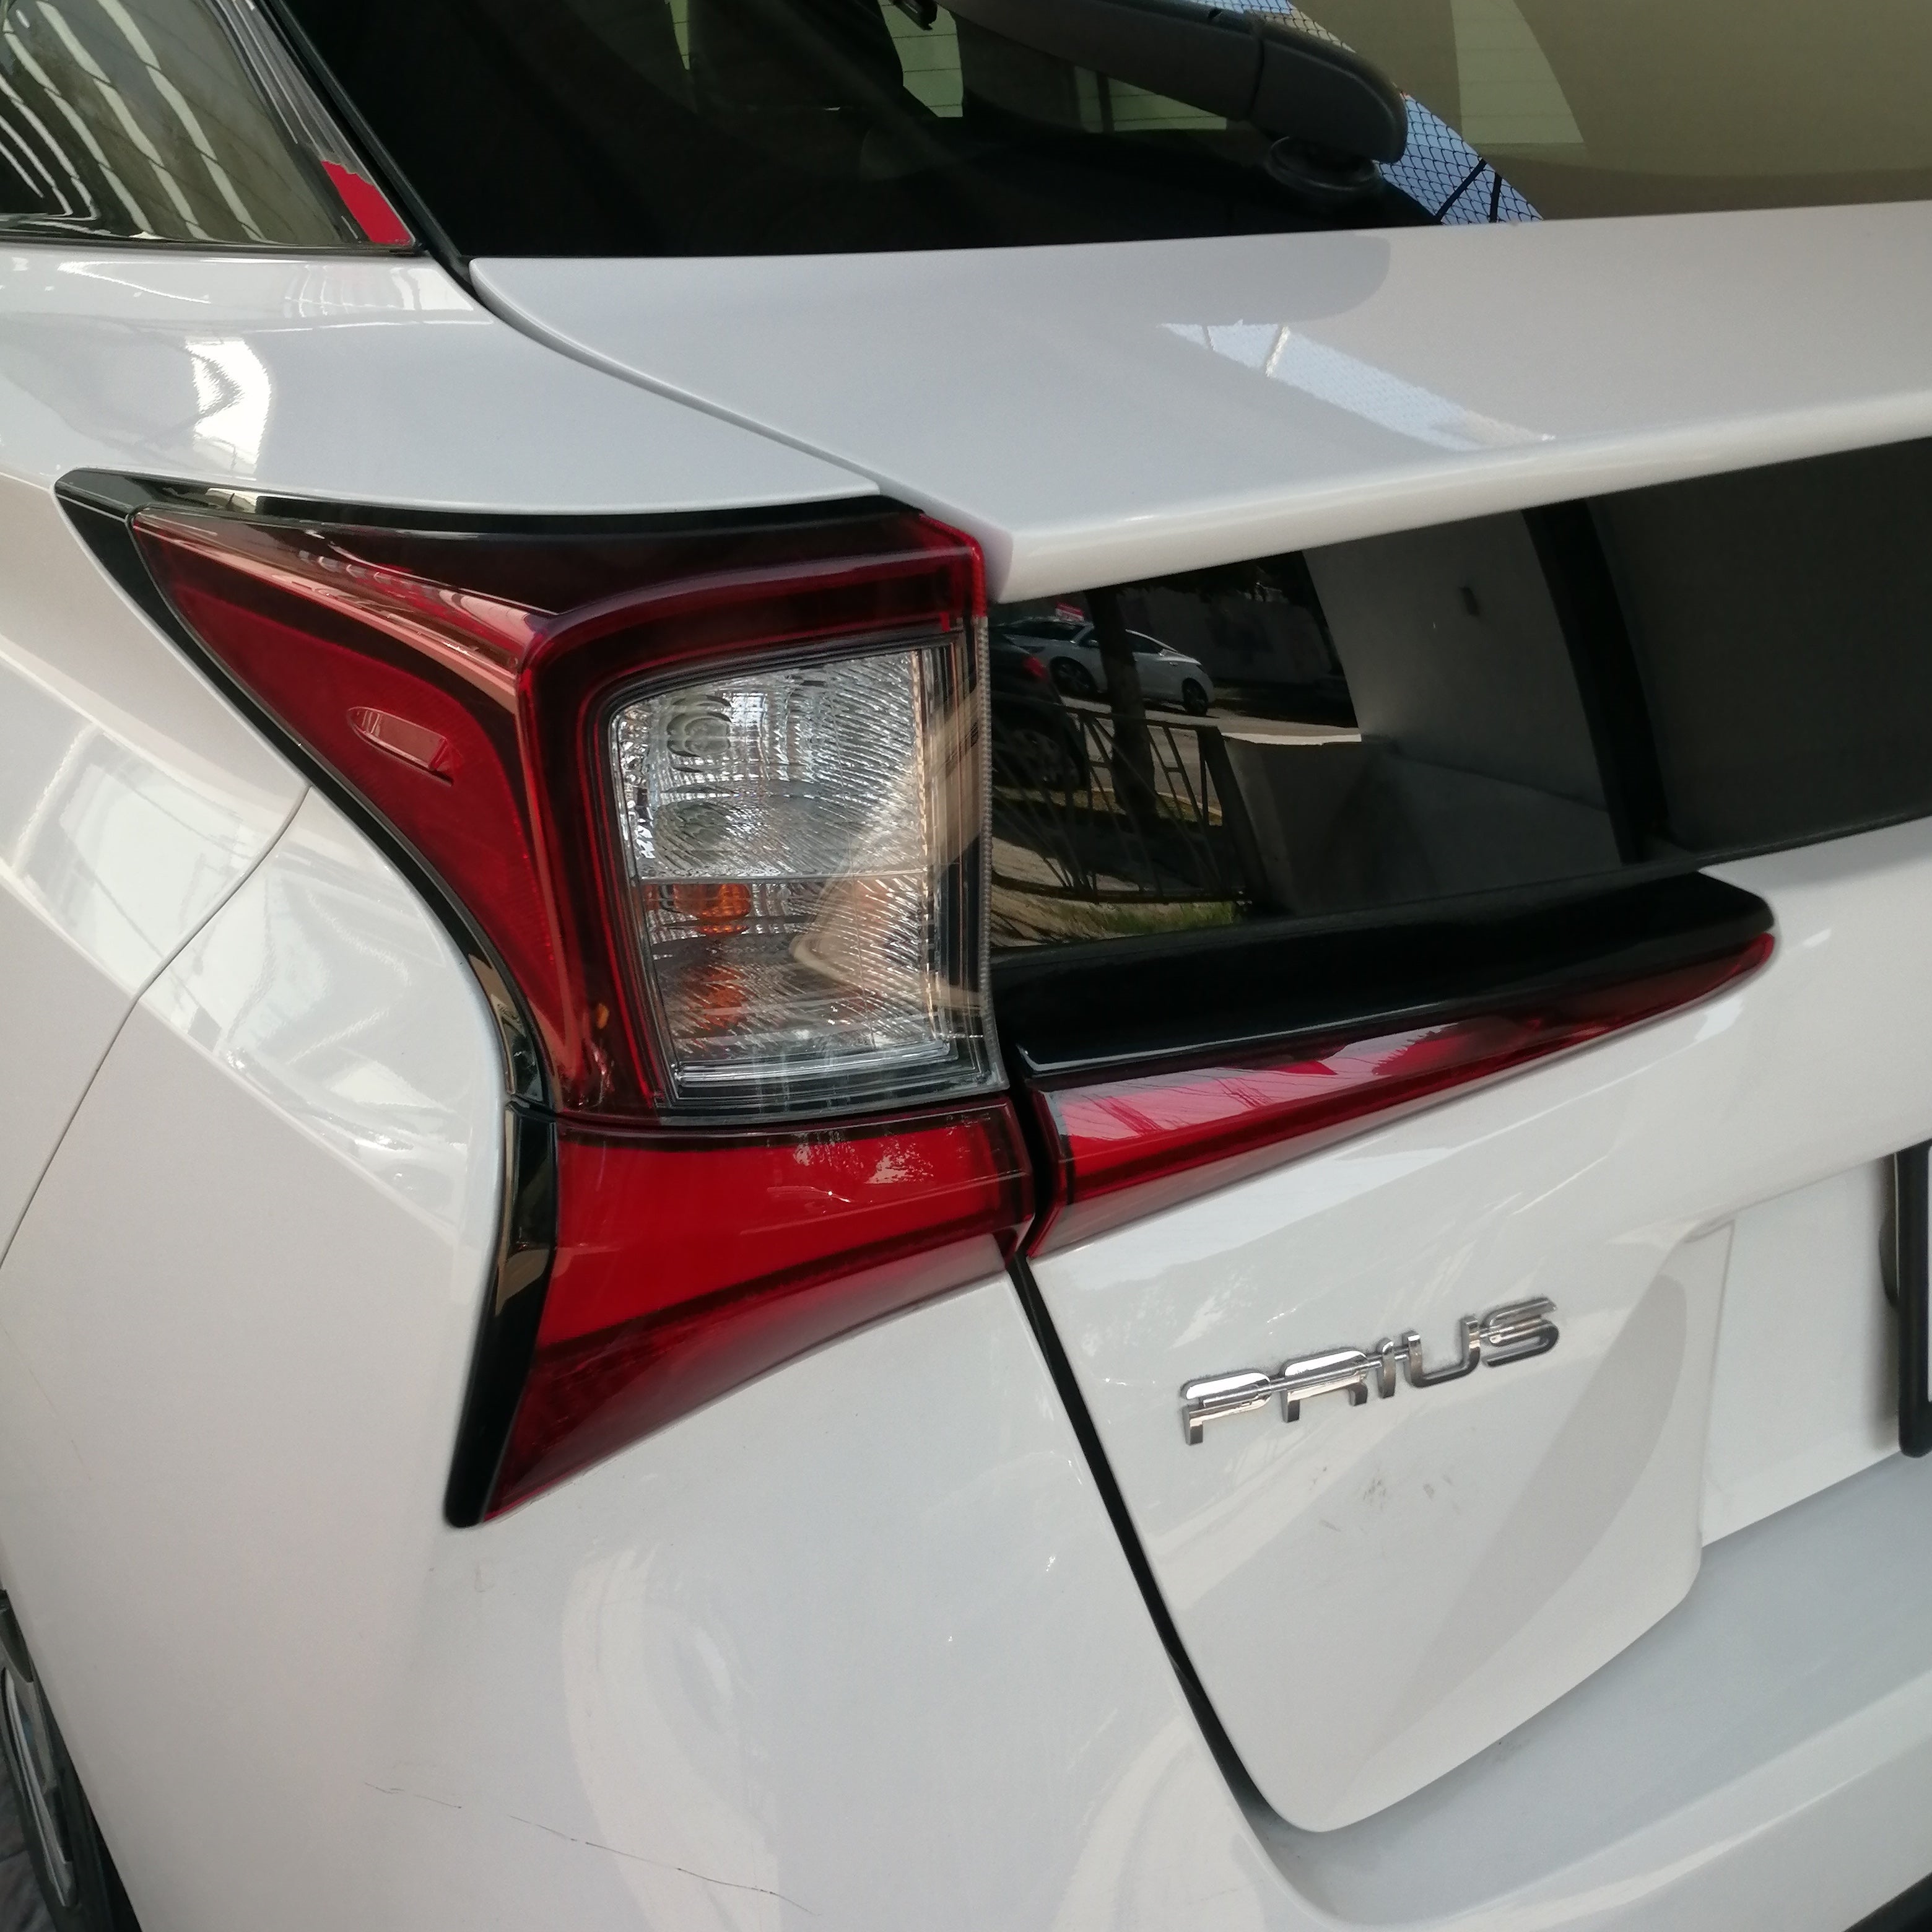 2021 Toyota Prius PREMIUM, L4, 1.8L, 98 CP, 5 PUERTAS, AUT, HIBRIDO